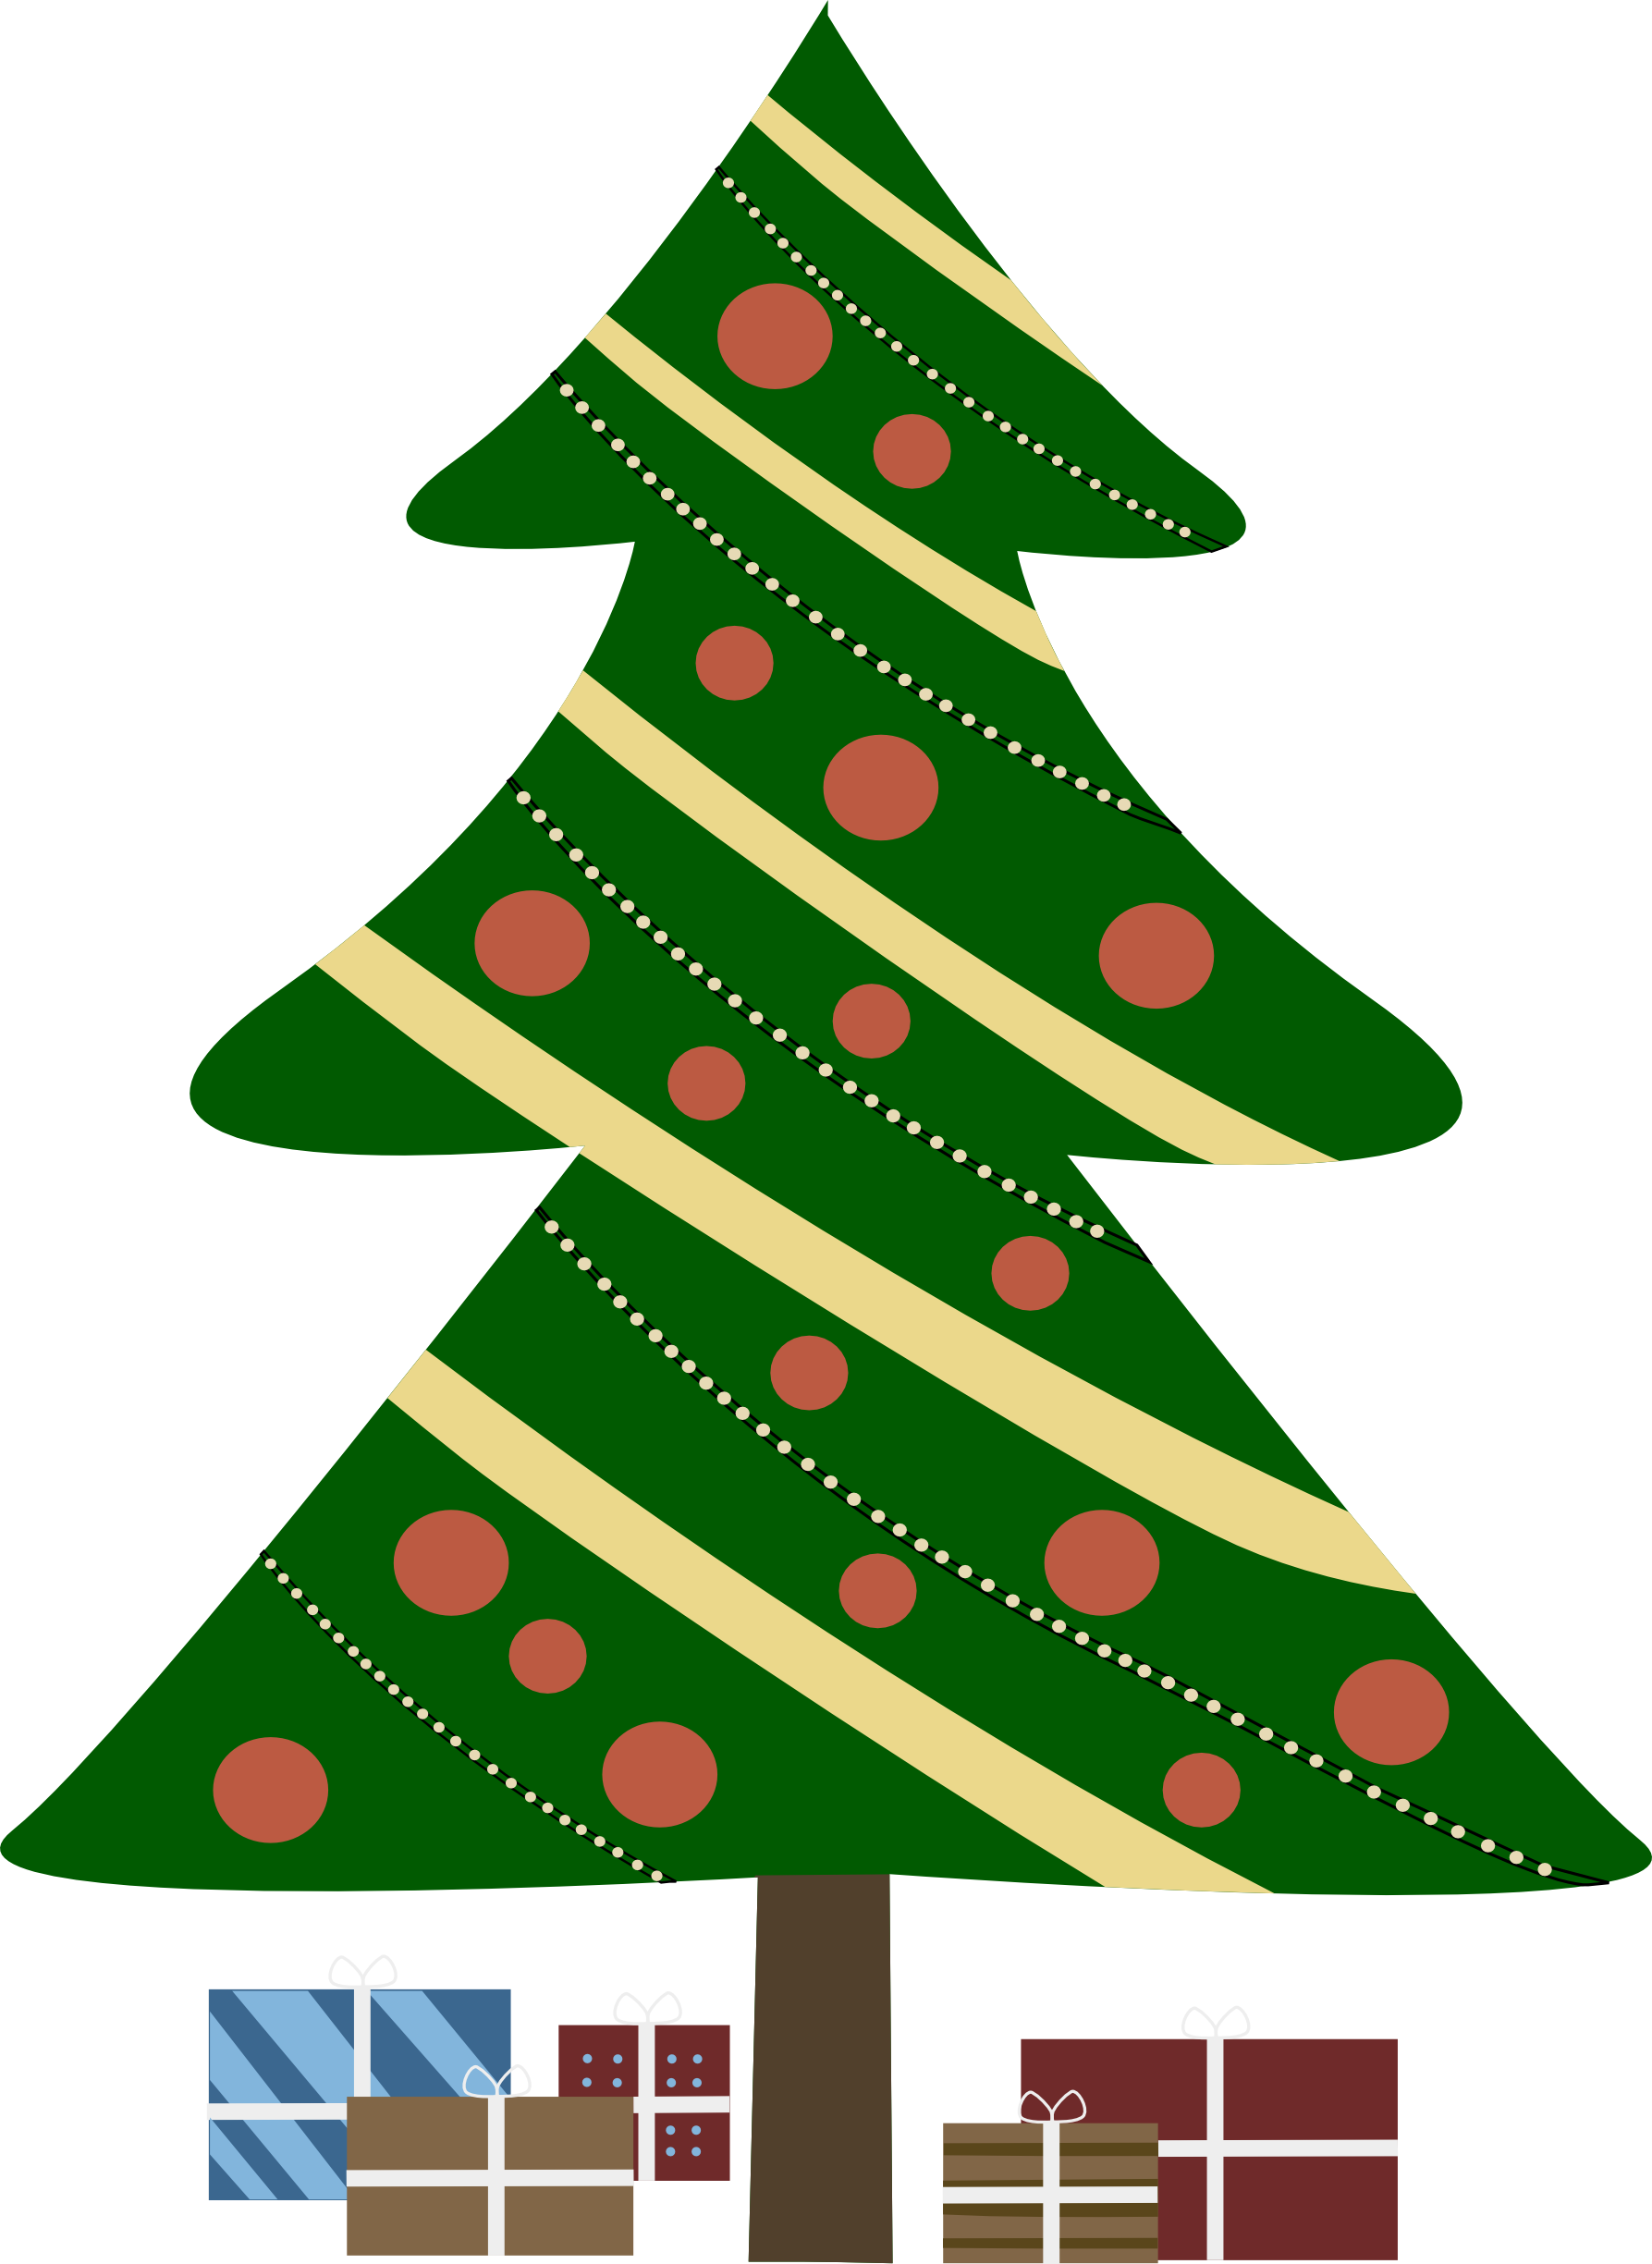 Animated Tree Christmas Free HQ Image PNG Image